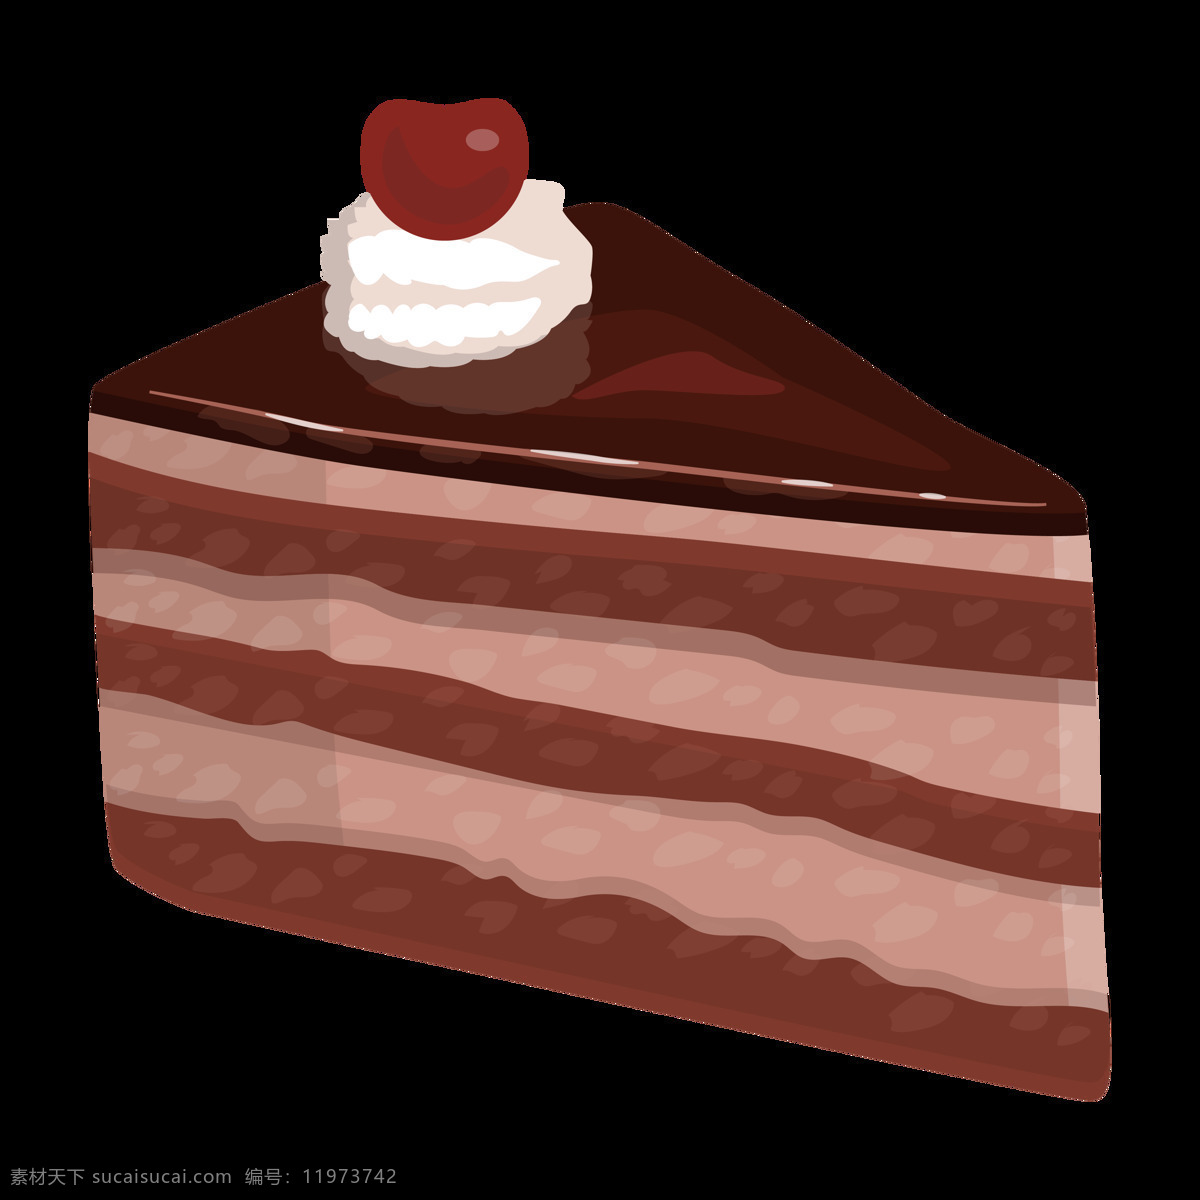 卡通蛋糕图片 透明底蛋糕 蛋糕免扣图 png图 免扣图